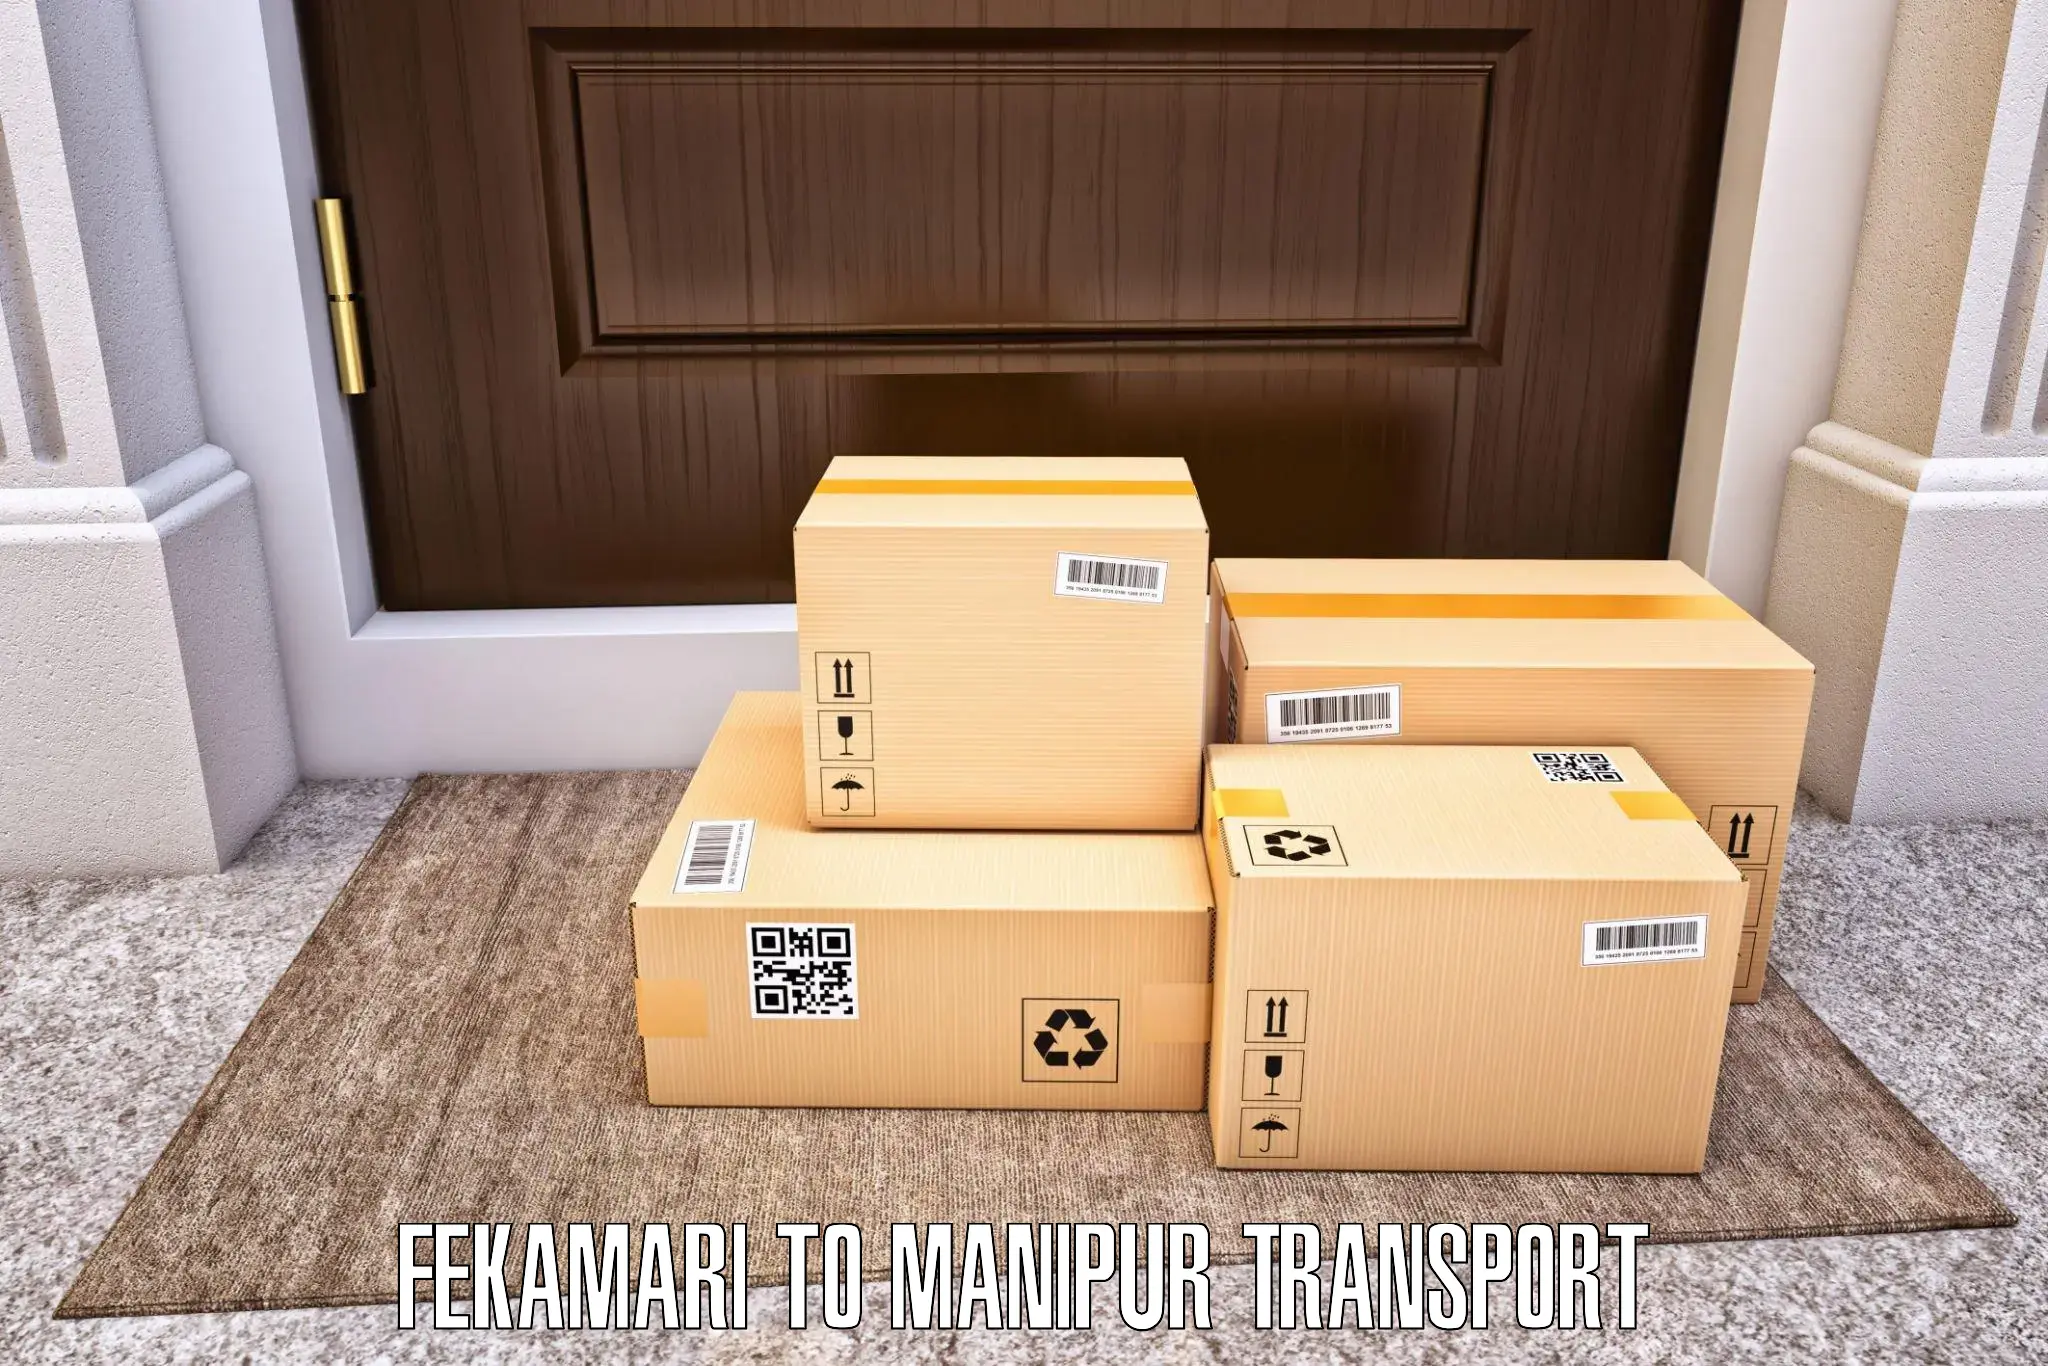 Furniture transport service Fekamari to Kakching